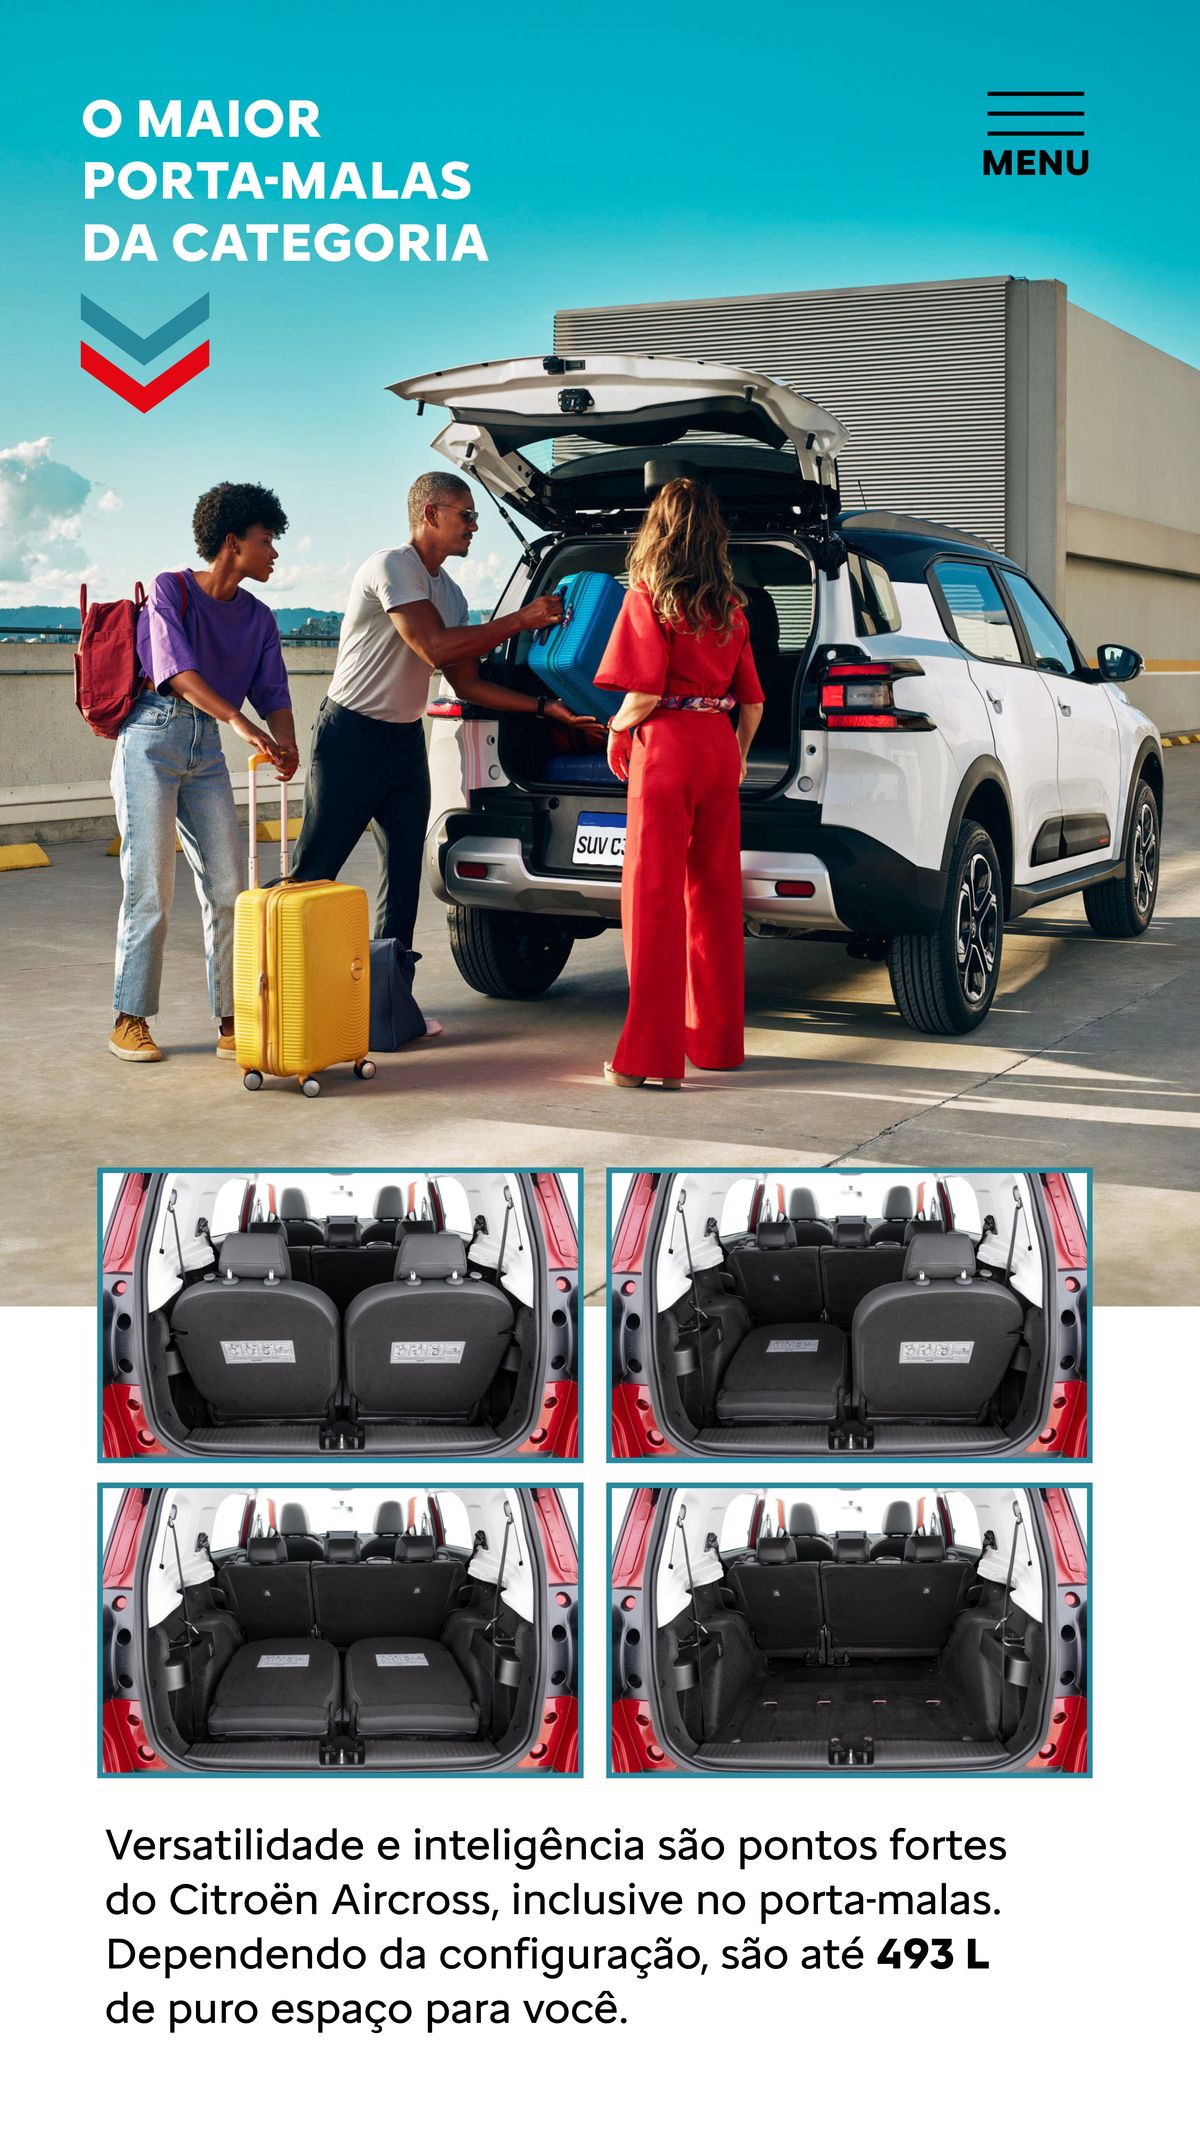 Espaço amplo e versátil no porta-malas do Citroën Aircross